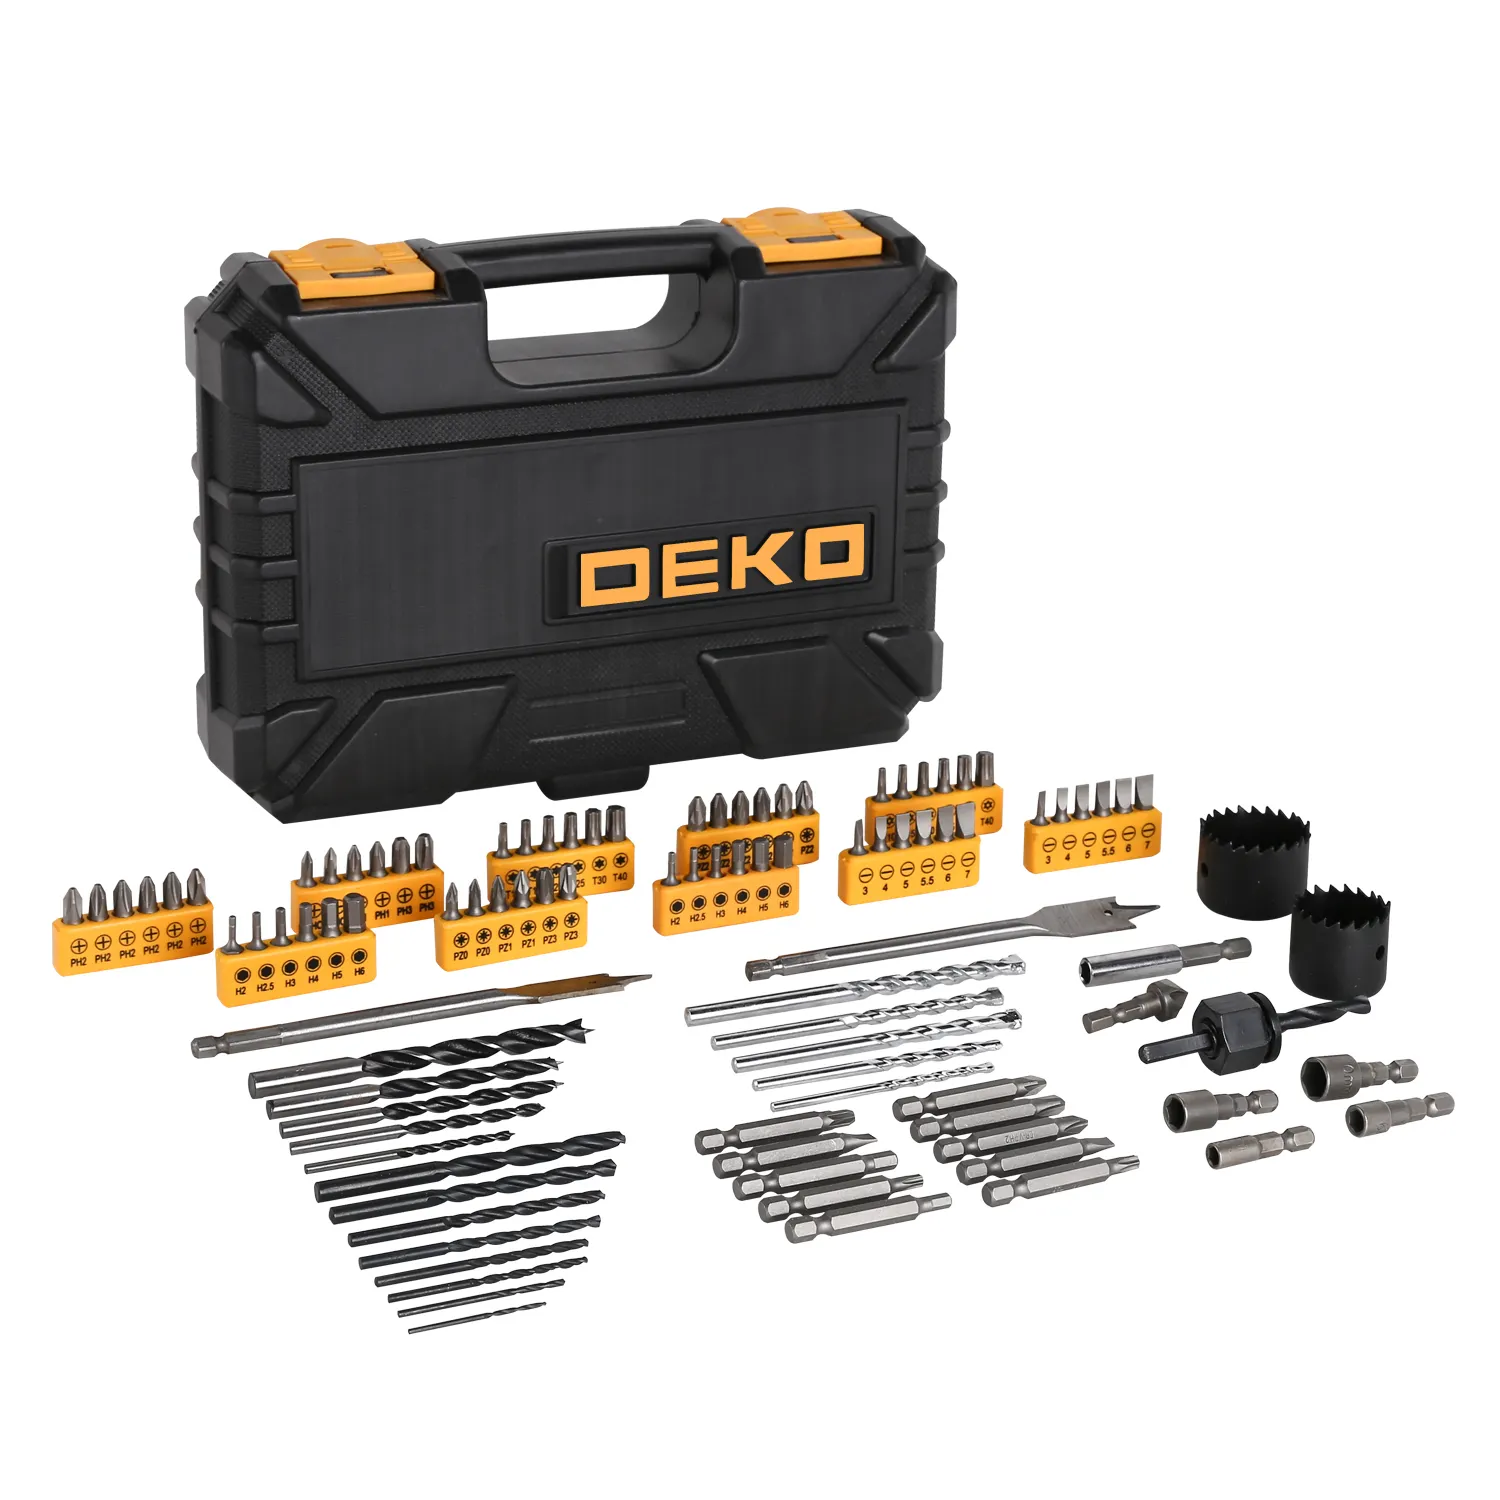 DEKO — boîte à outils Portable DIY DKMT99, ensemble d'outils avec Bits multifonctions, tournevis, boîte de rangement, 99 pièces